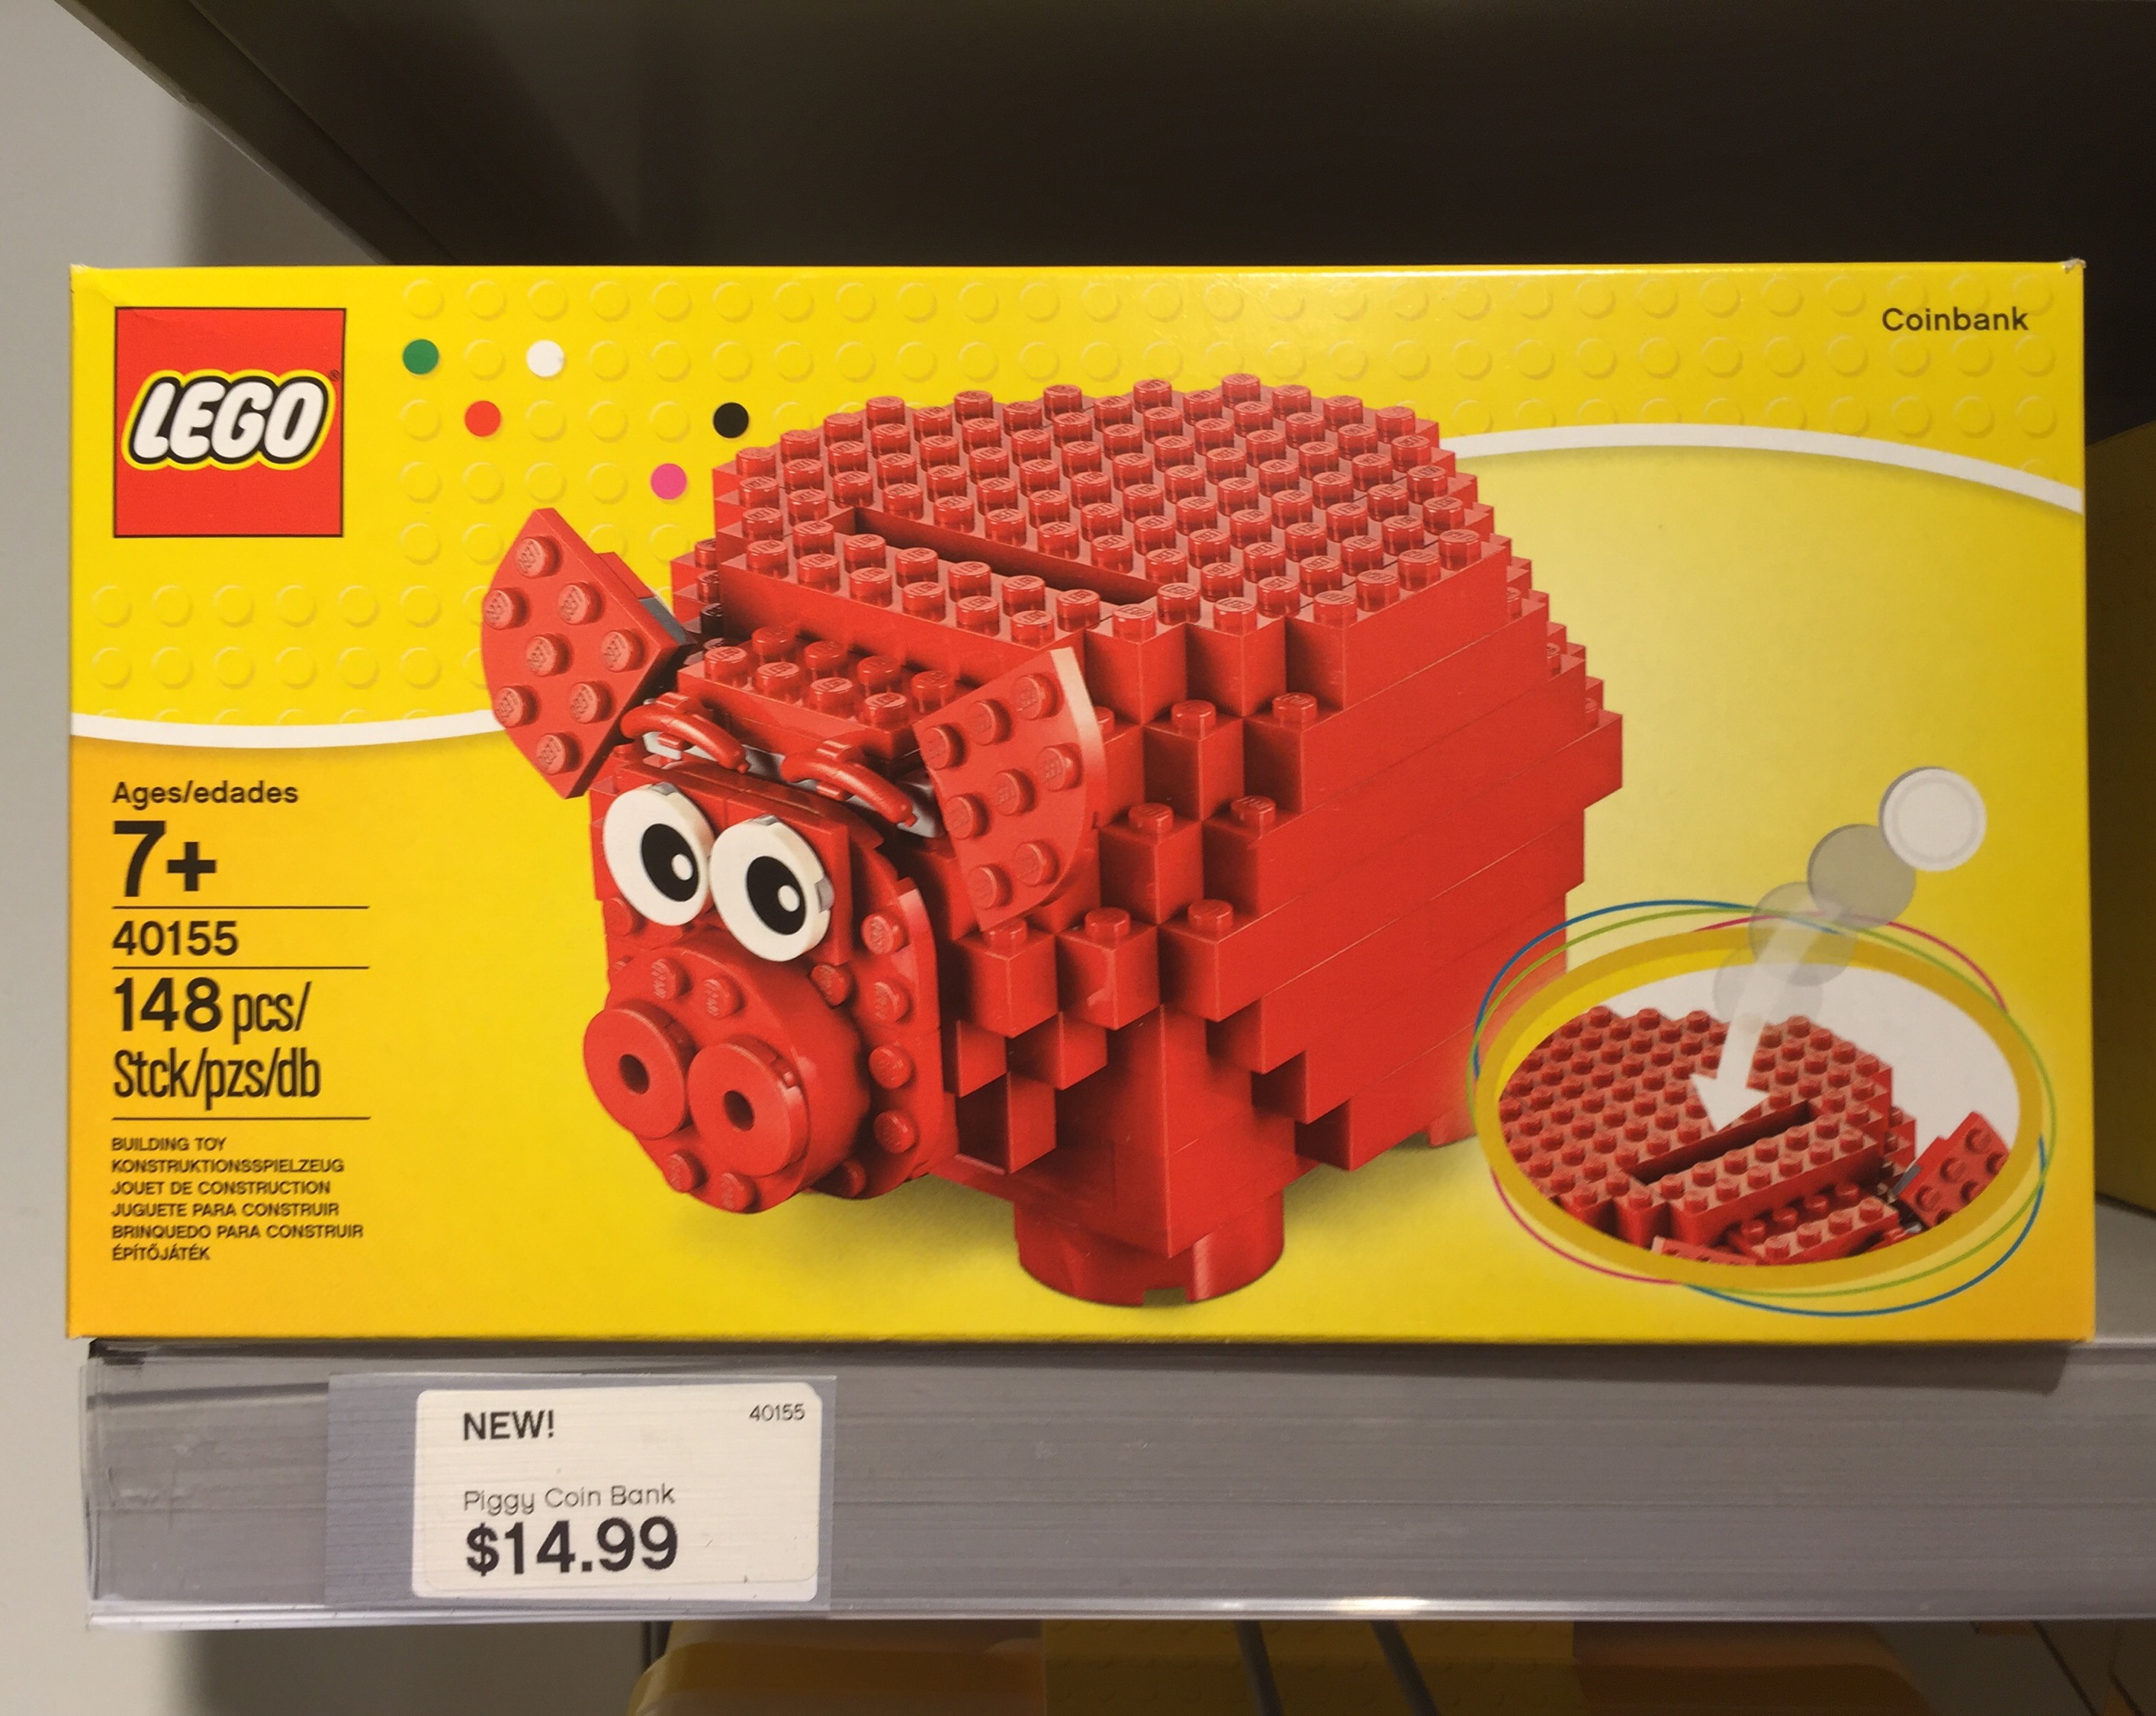 Fristelse godtgørelse Anvendelse LEGO Piggy Coin Bank 40155 Released & Photos! - Bricks and Bloks